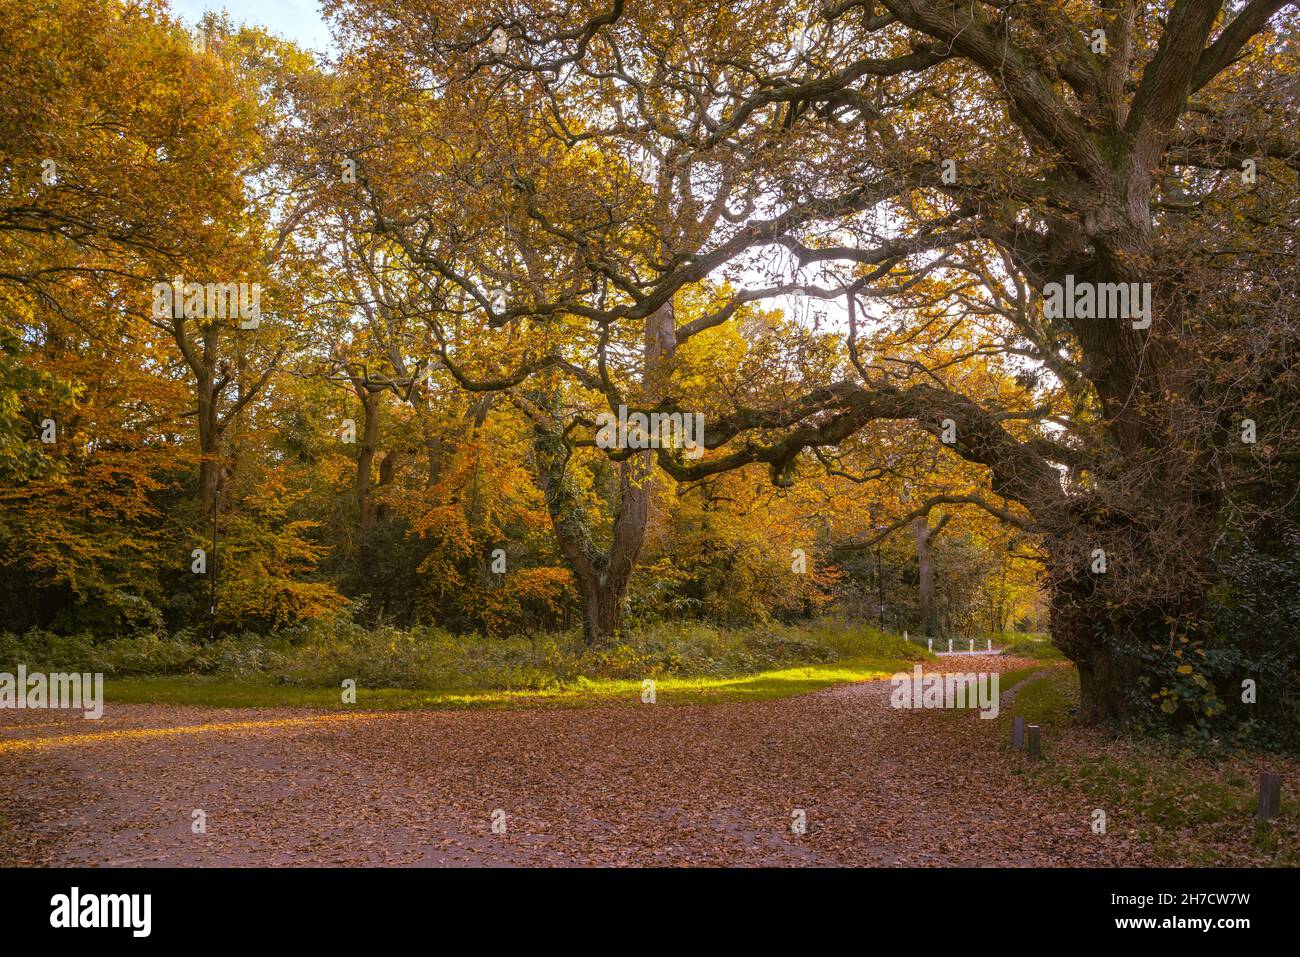 Southampton Common Park during autumn, Southampton, Hampshire, England, UK Stock Photo